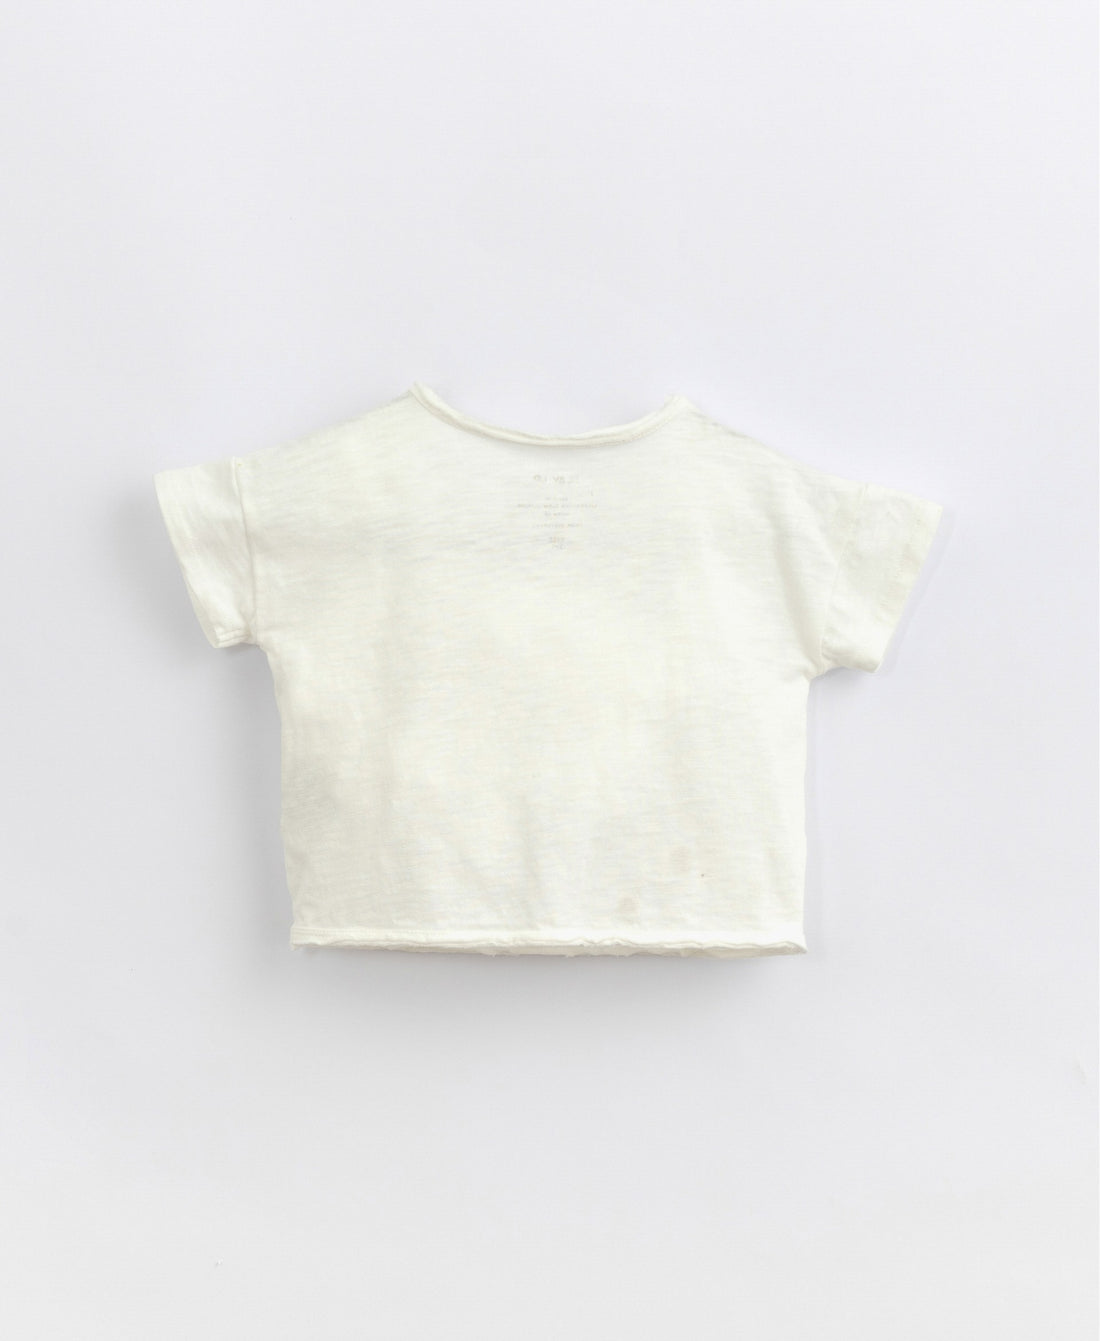 Play up -  Baby Shirt aus Biobaumwolle in weiß